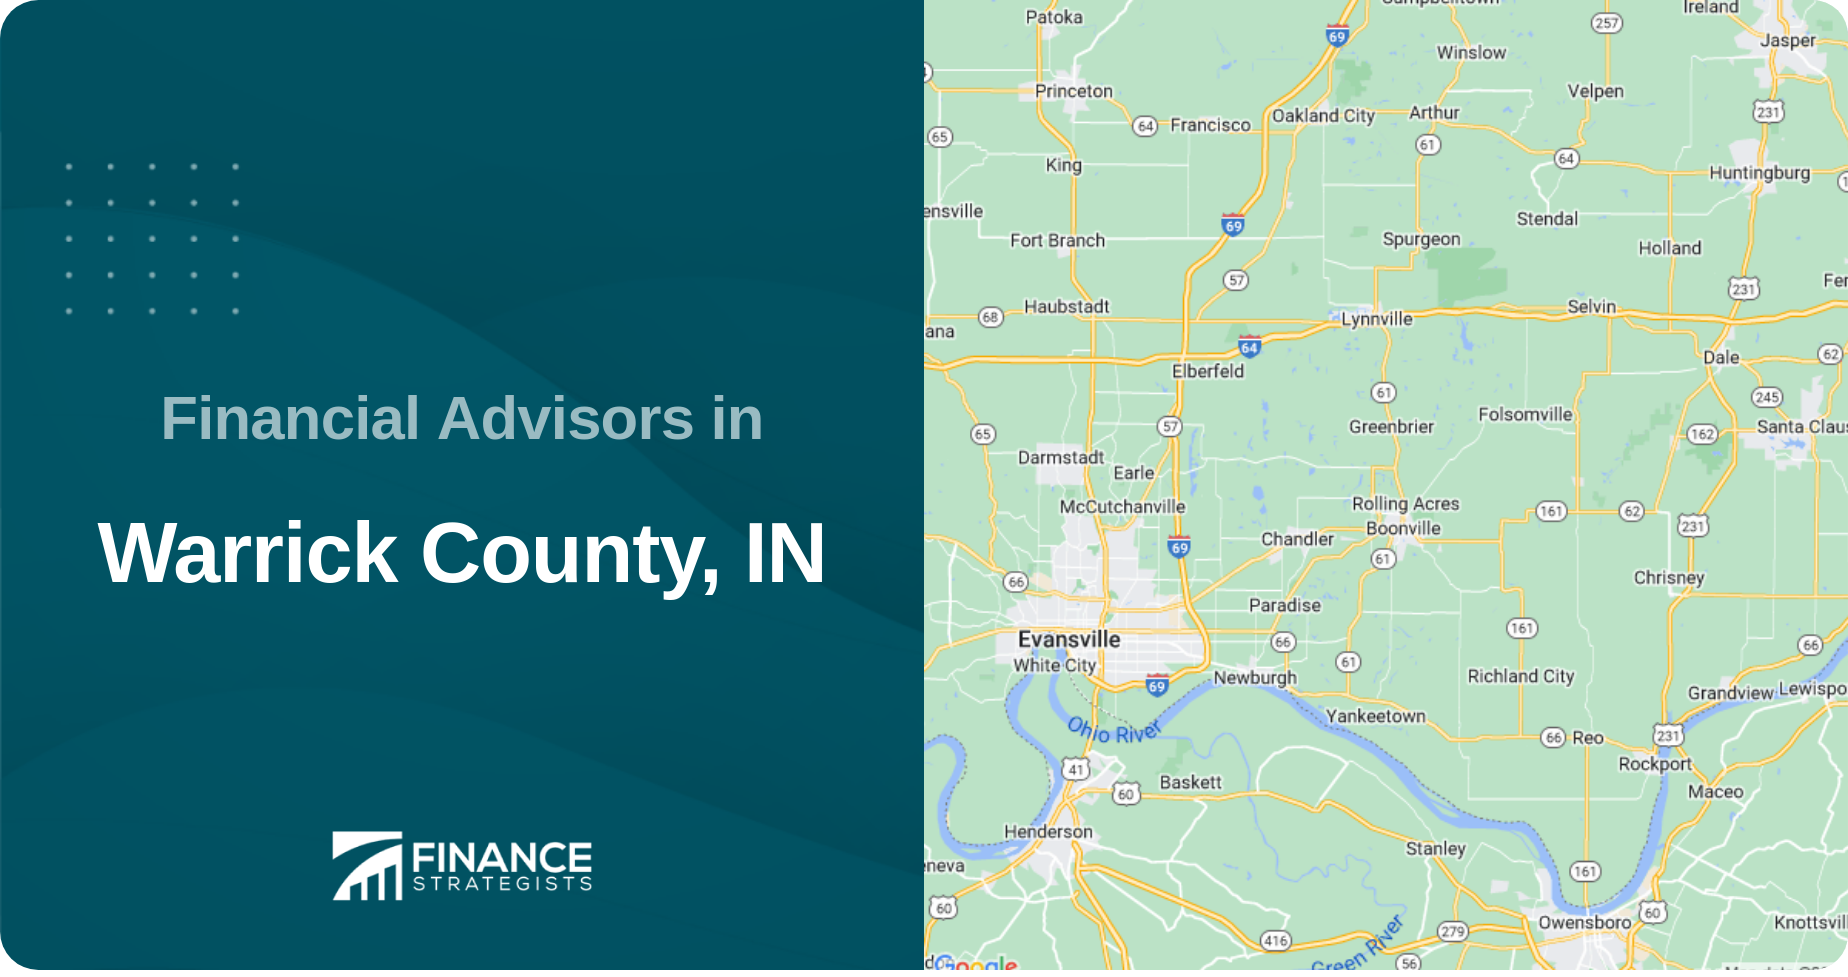 Financial Advisors in Warrick County, IN